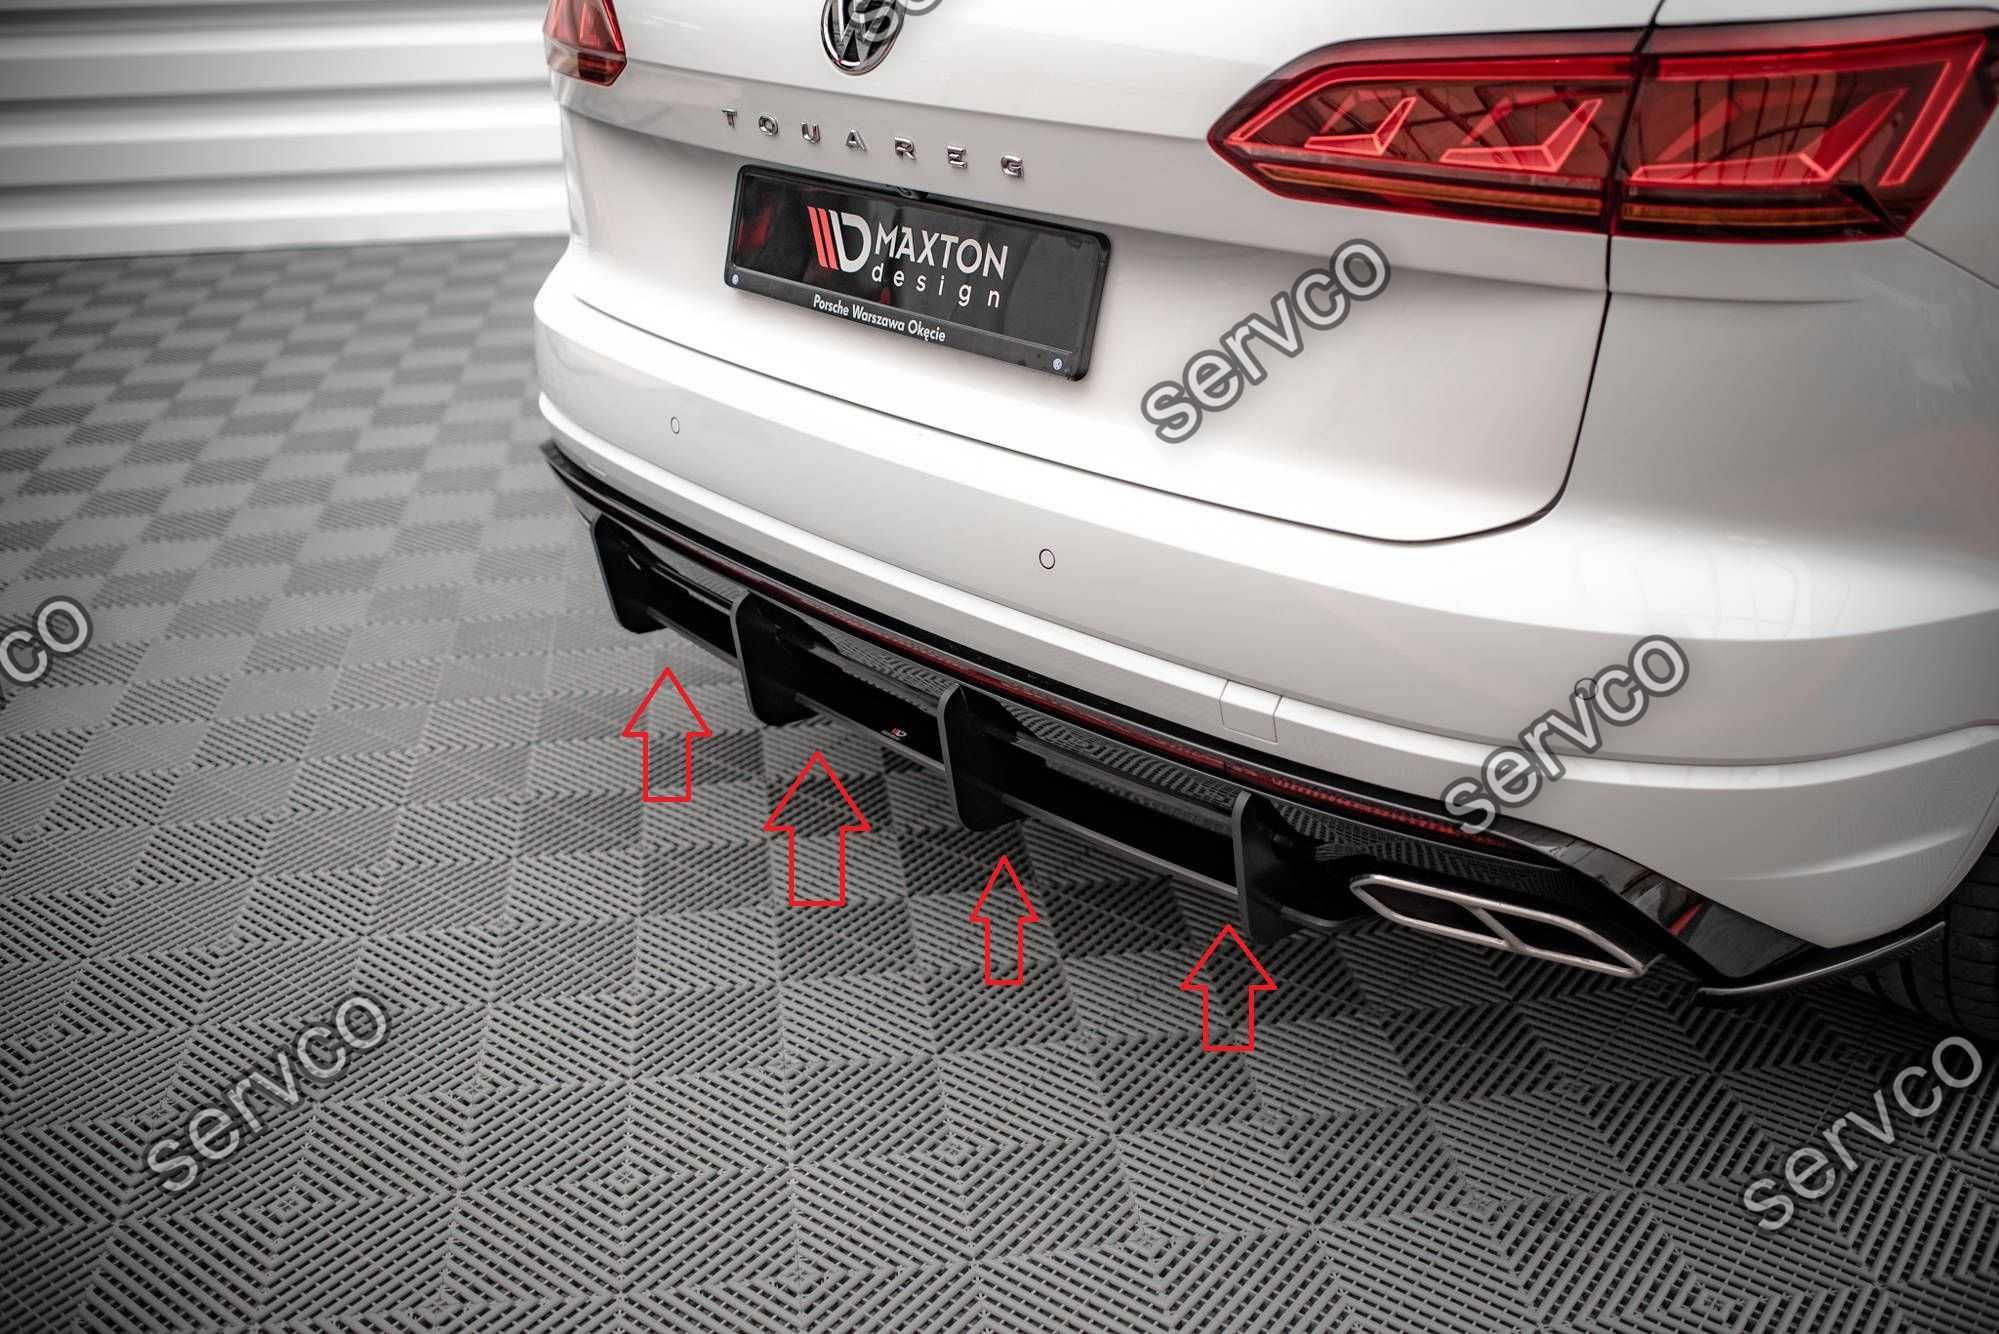 Pachet Body kit Volkswagen Touareg R-Line 2018- v2 - Maxton Design